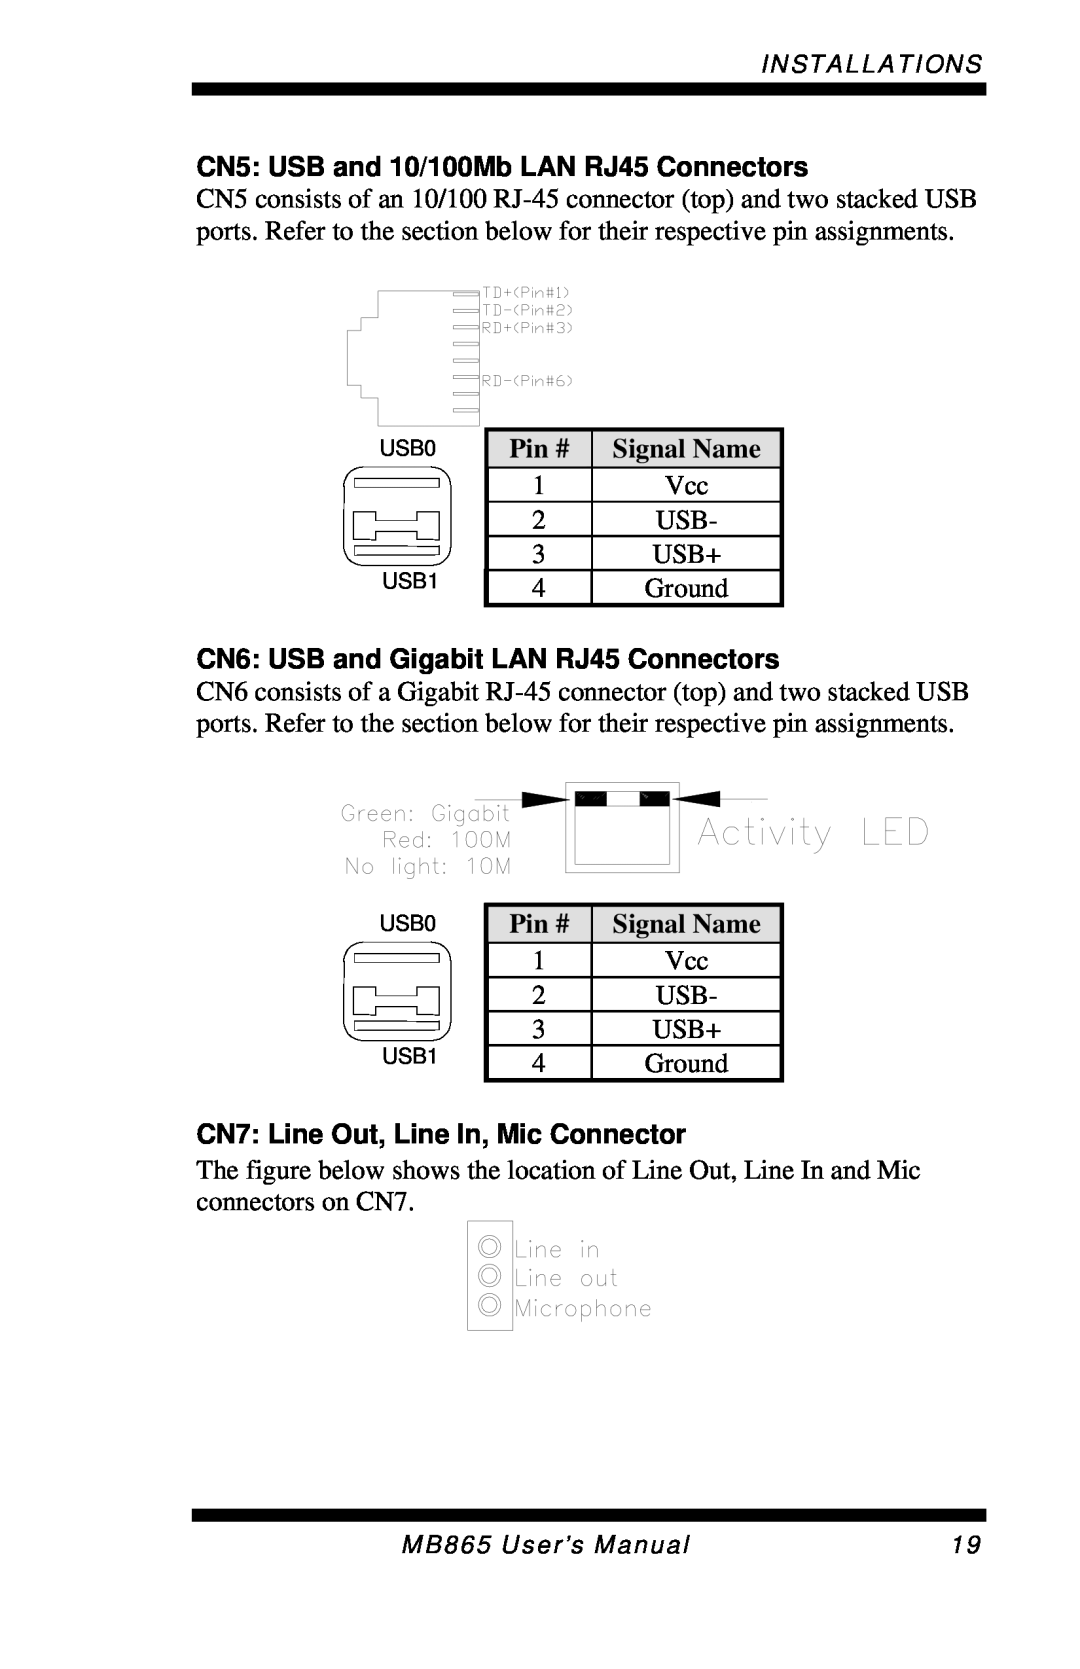 Intel MB865 CN5 USB and 10/100Mb LAN RJ45 Connectors, CN6 USB and Gigabit LAN RJ45 Connectors, Pin #, Signal Name 